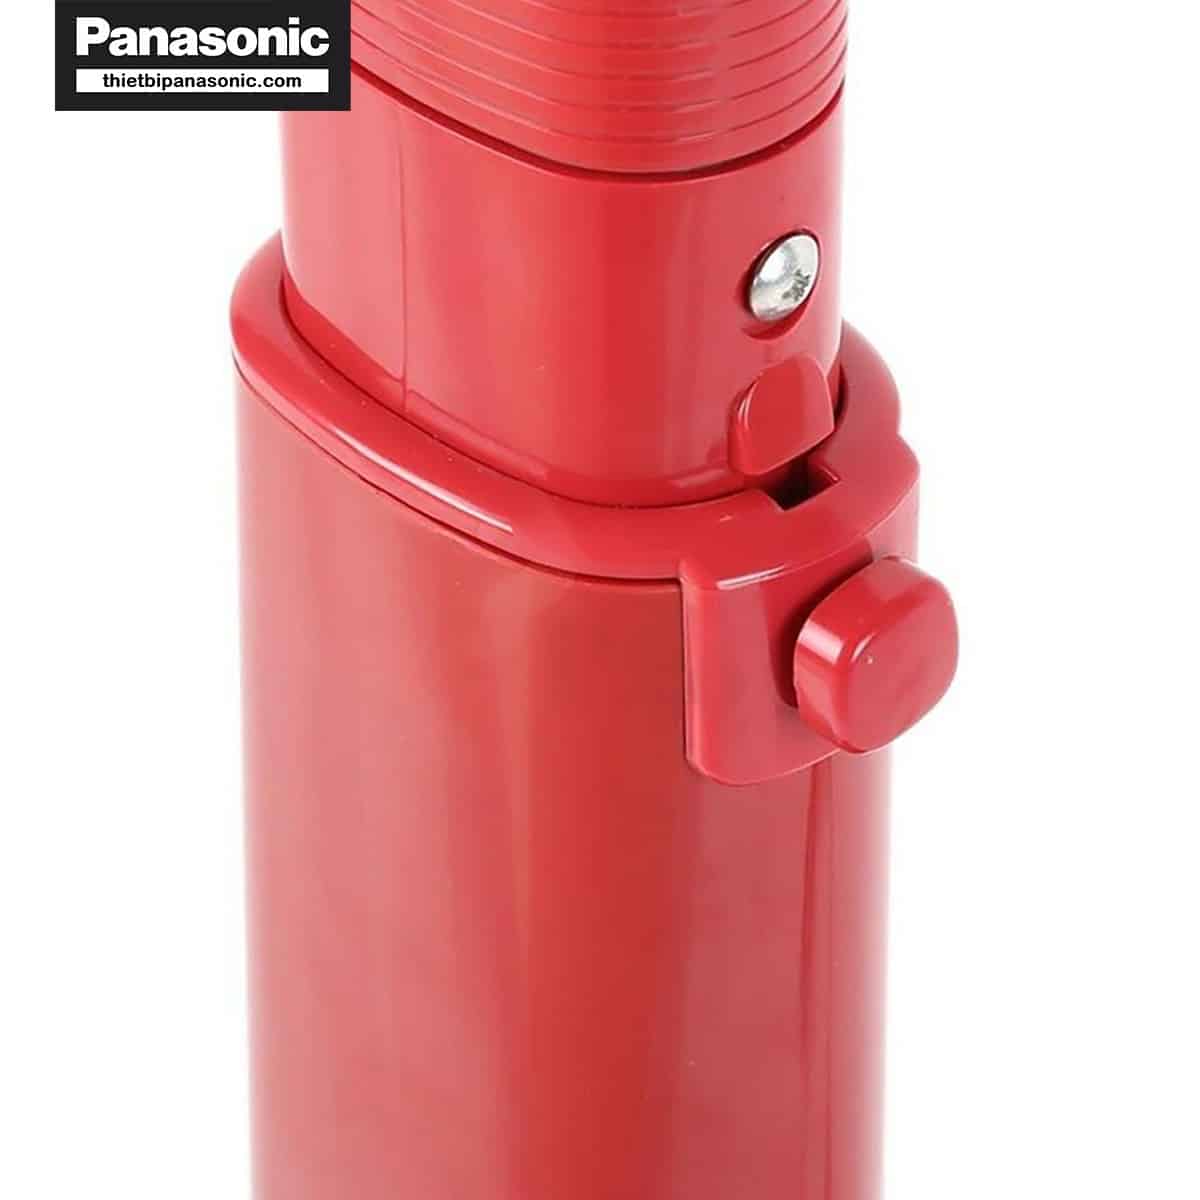 Quạt đứng Panasonic F-409KMR có thể điều chỉnh được độ cao một cách dễ dàng